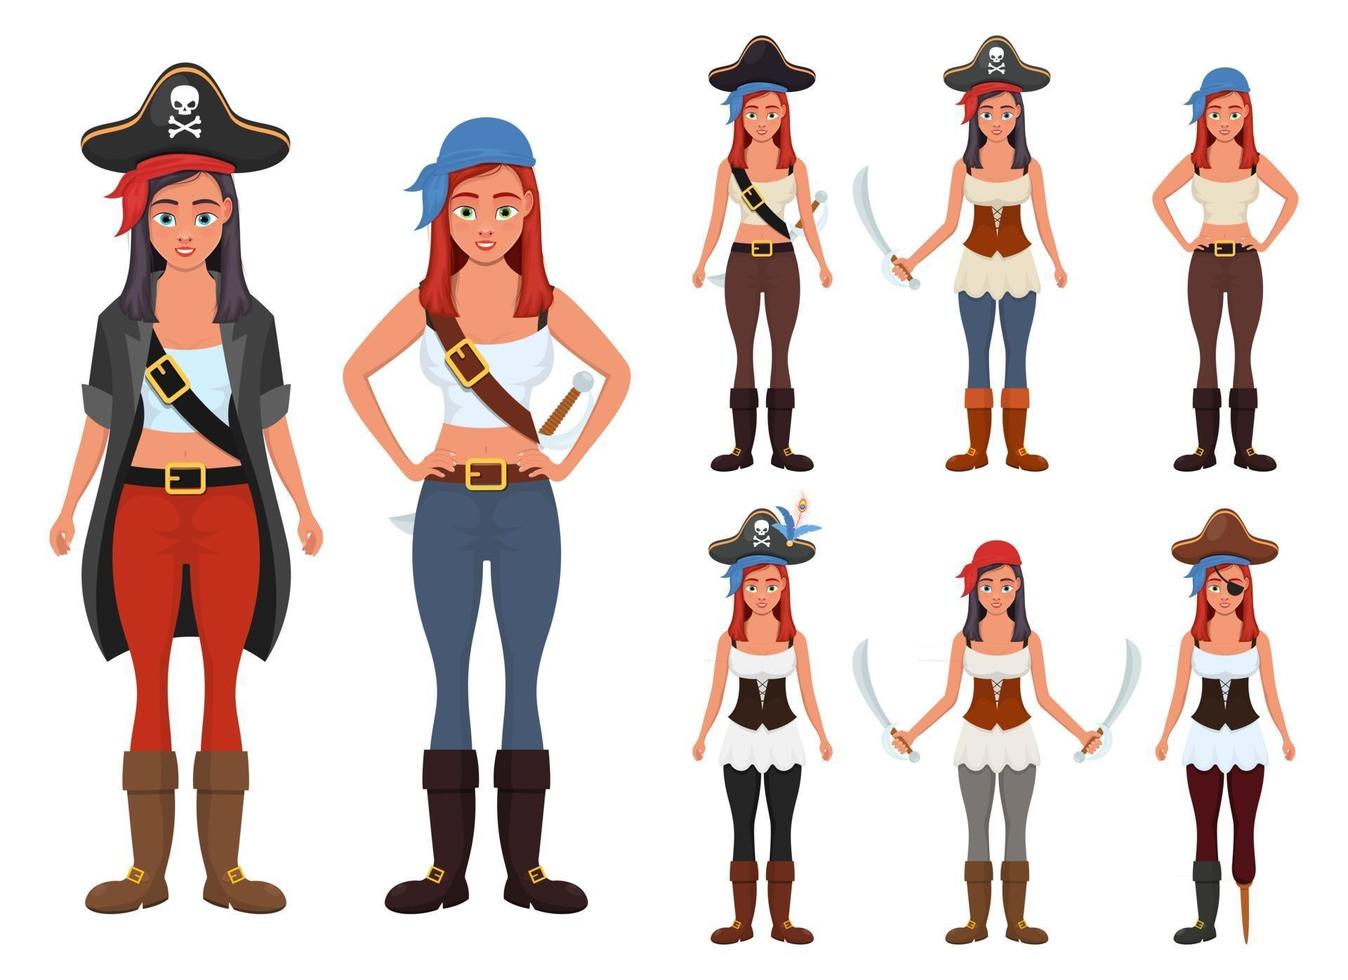 Piratenfrauenvektordesignillustration lokalisiert auf weißem Hintergrund vektor